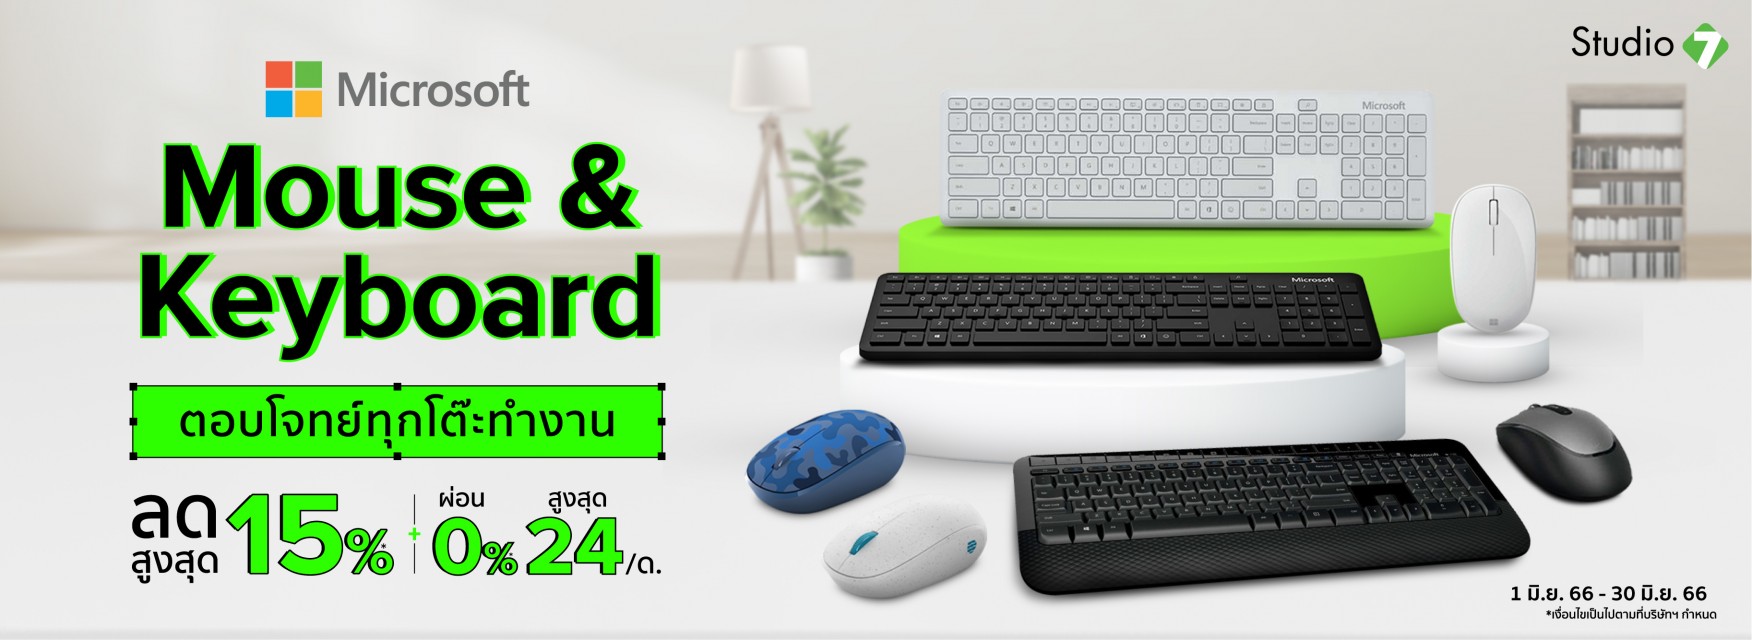 Microsoft Mouse & Keyboard